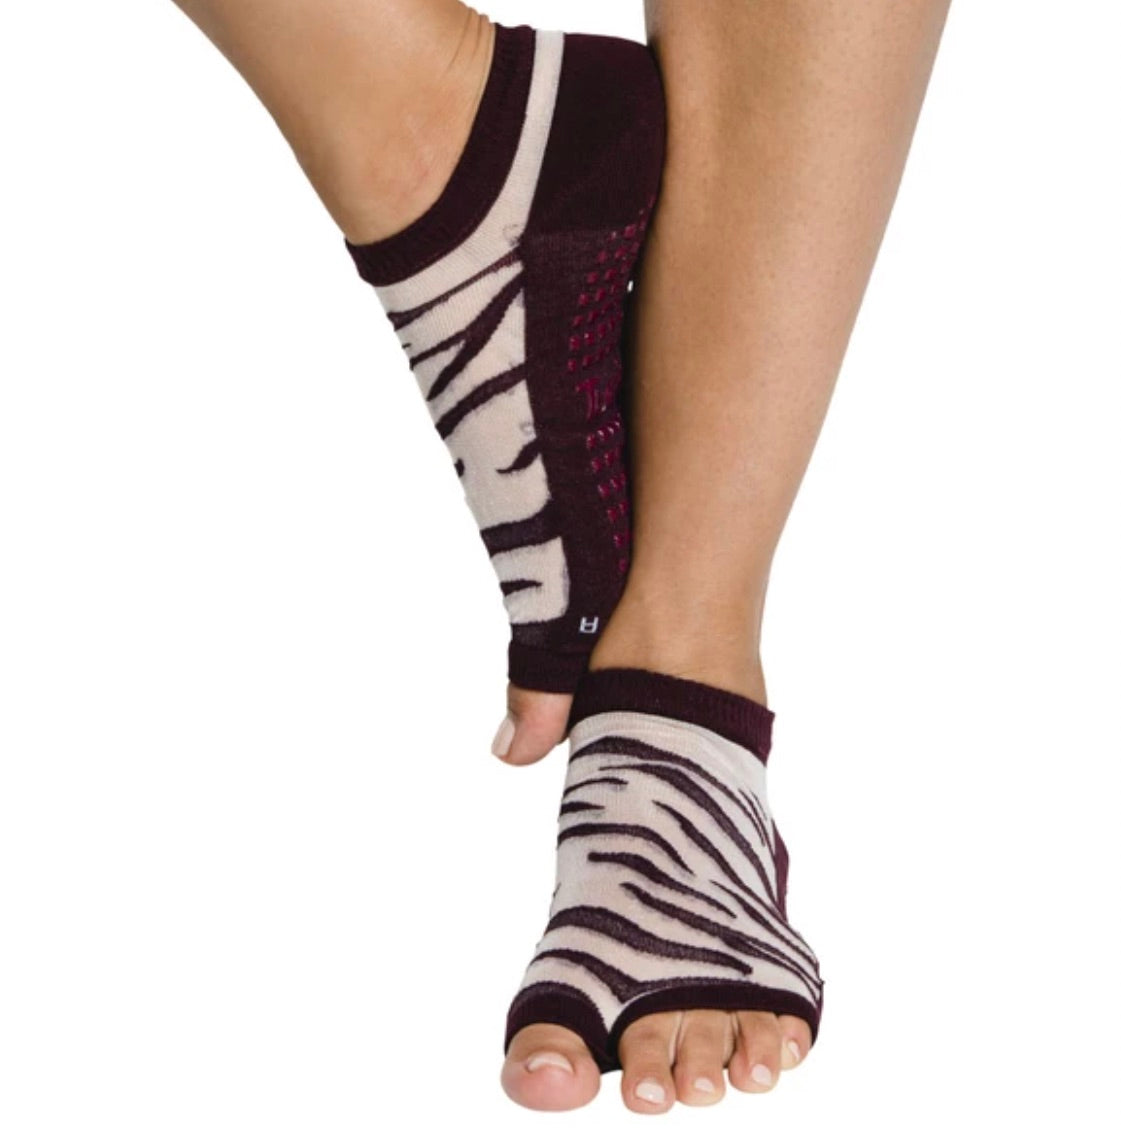  Tucketts Anklet Toeless Non-Slip Grip Socks - Anti